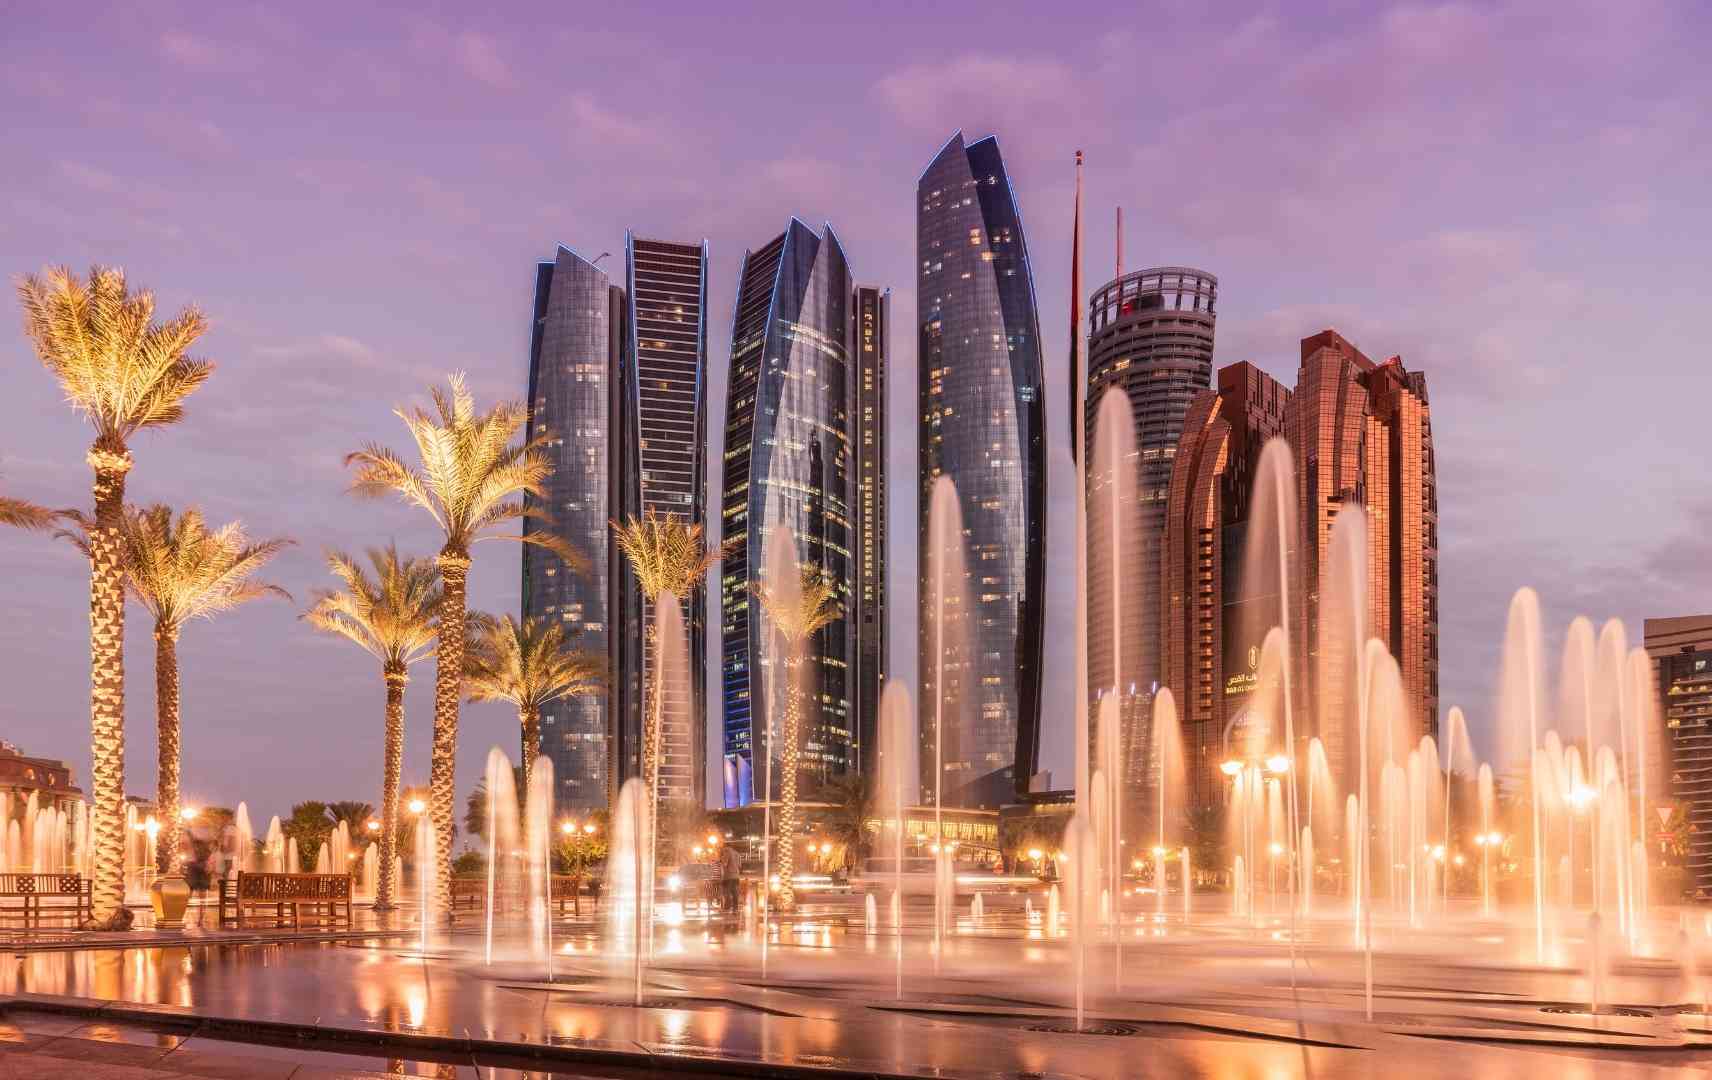 Ethiad Towers in Abu Dhabi